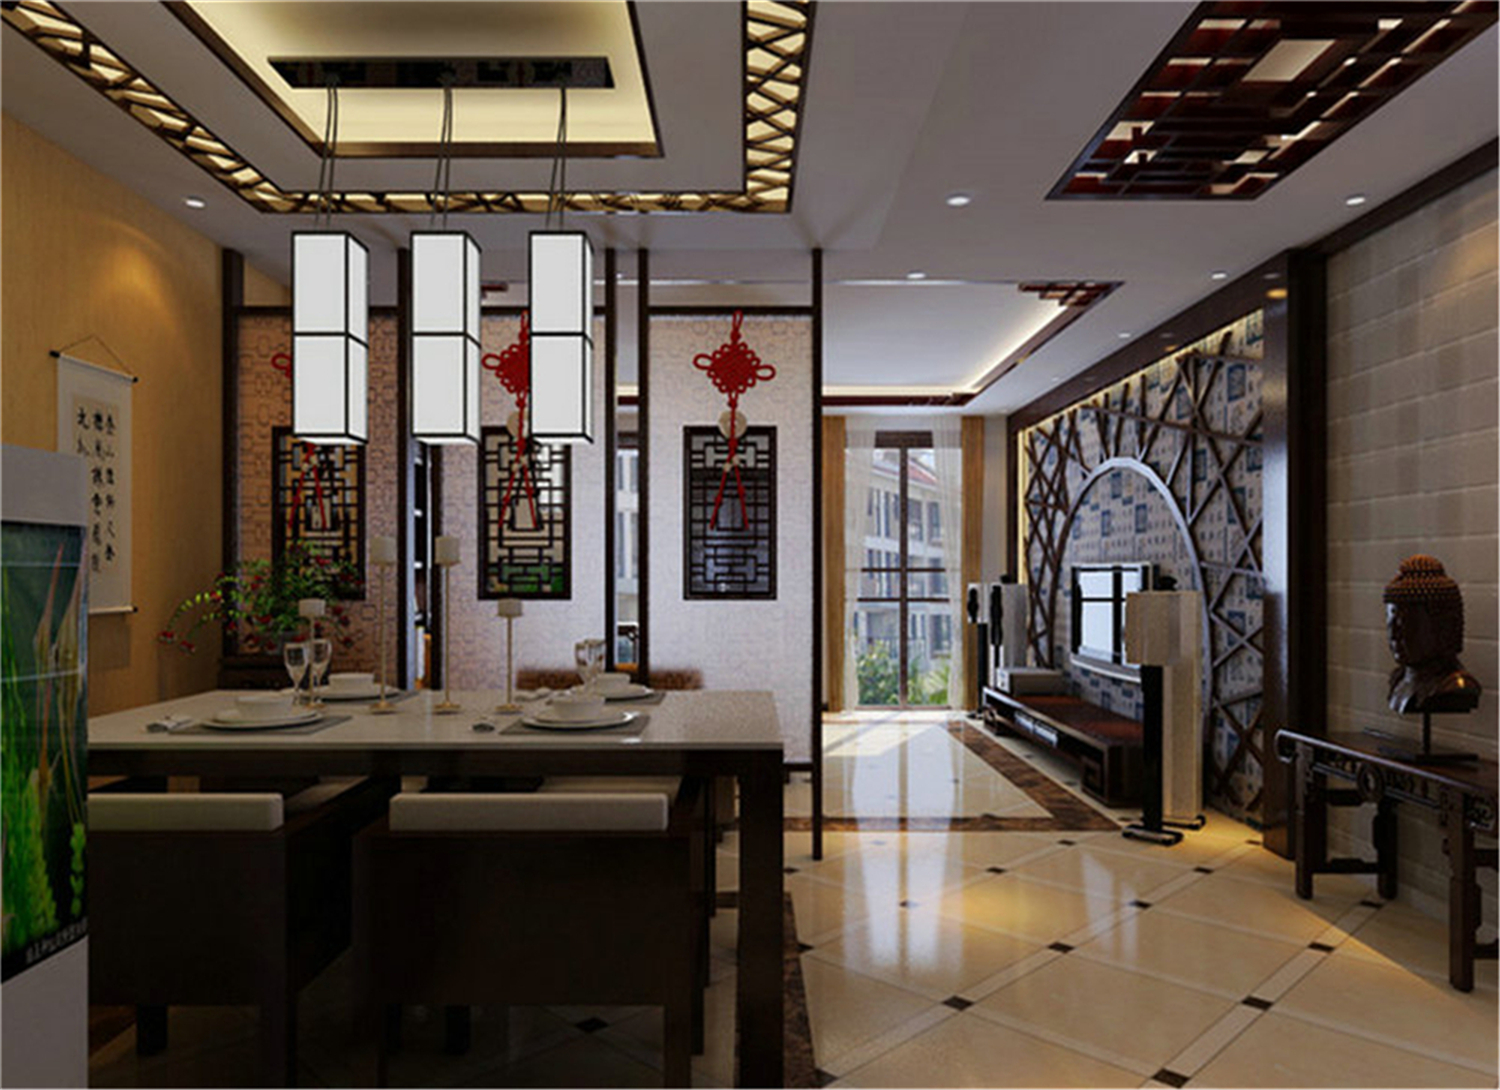 新中式 东源名都 3房 三居 餐厅图片来自实创装饰晶晶在实创装饰之东源名都新中风的分享